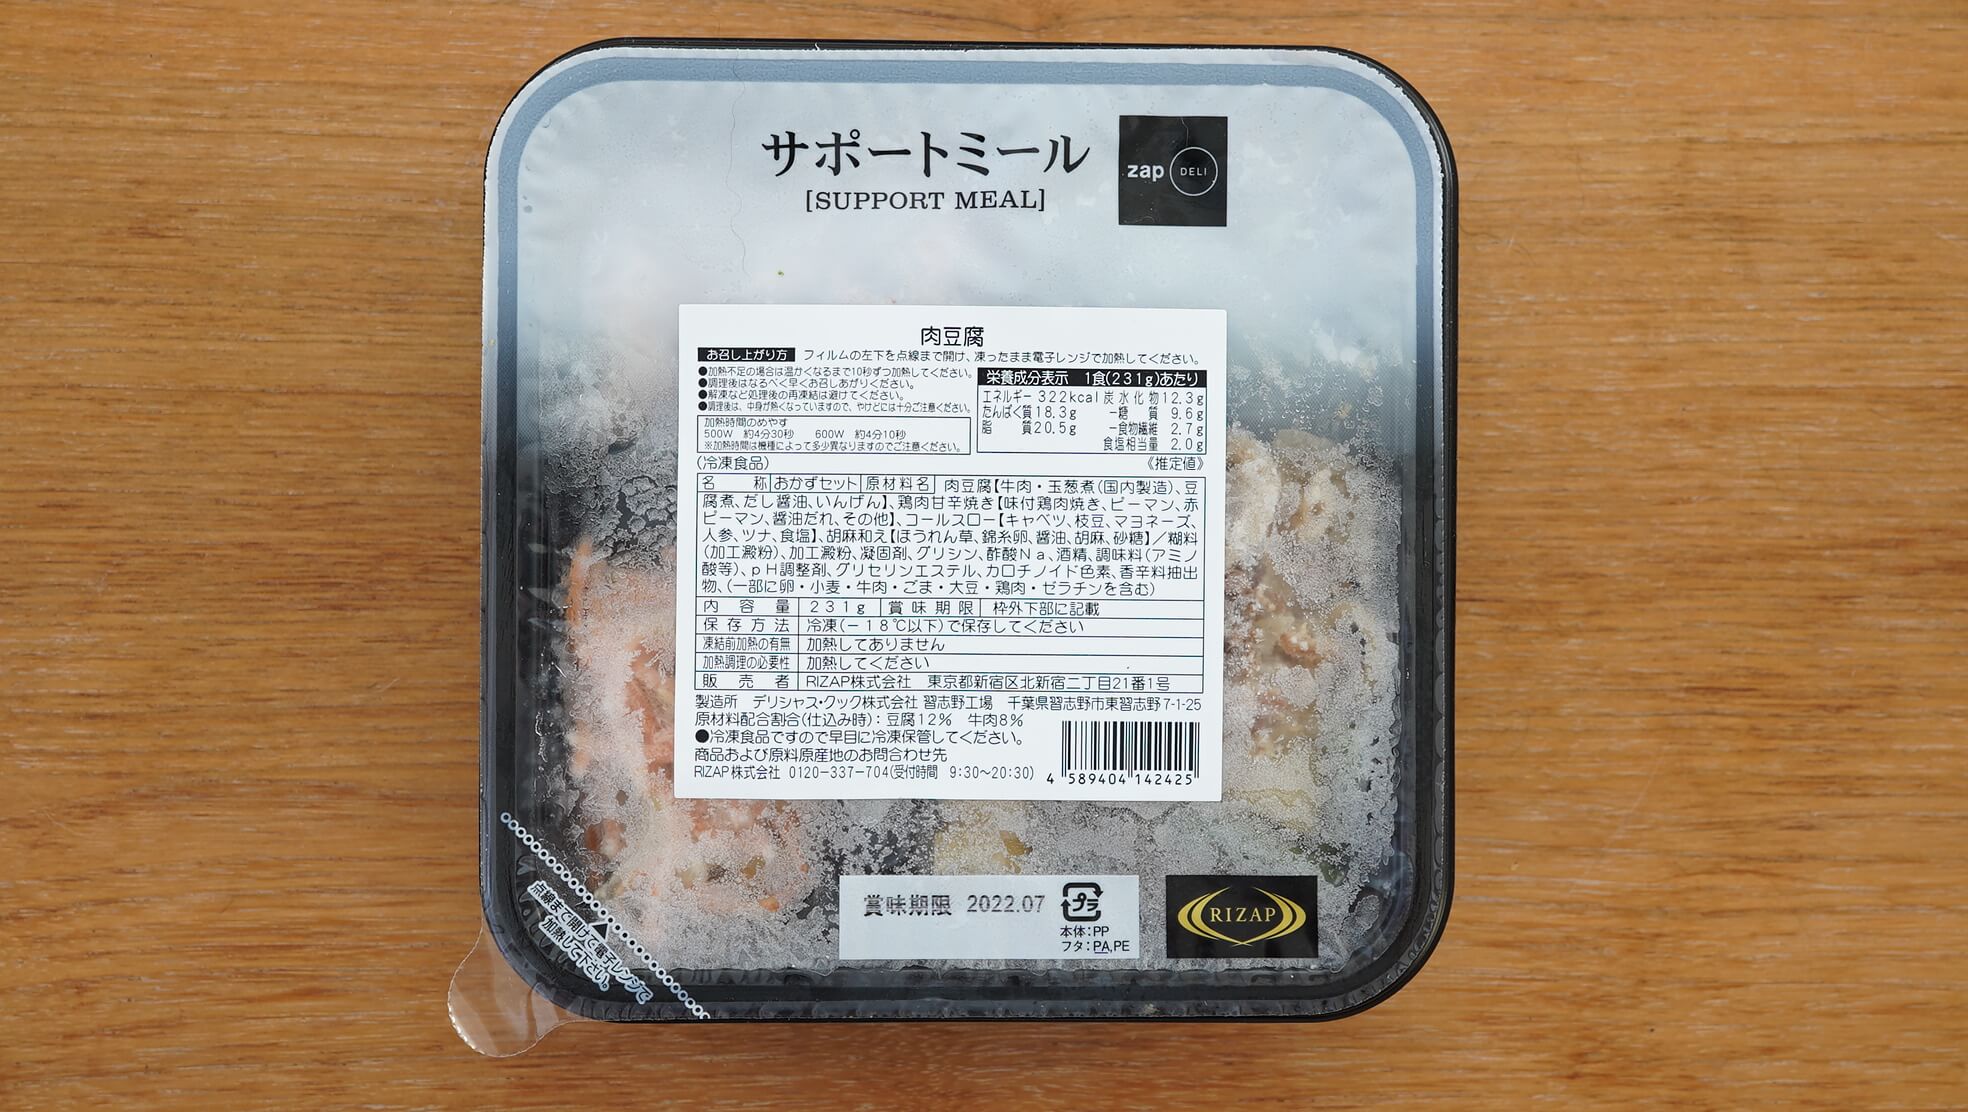 ライザップの冷凍弁当・サポートミール「肉豆腐」のパッケージ写真